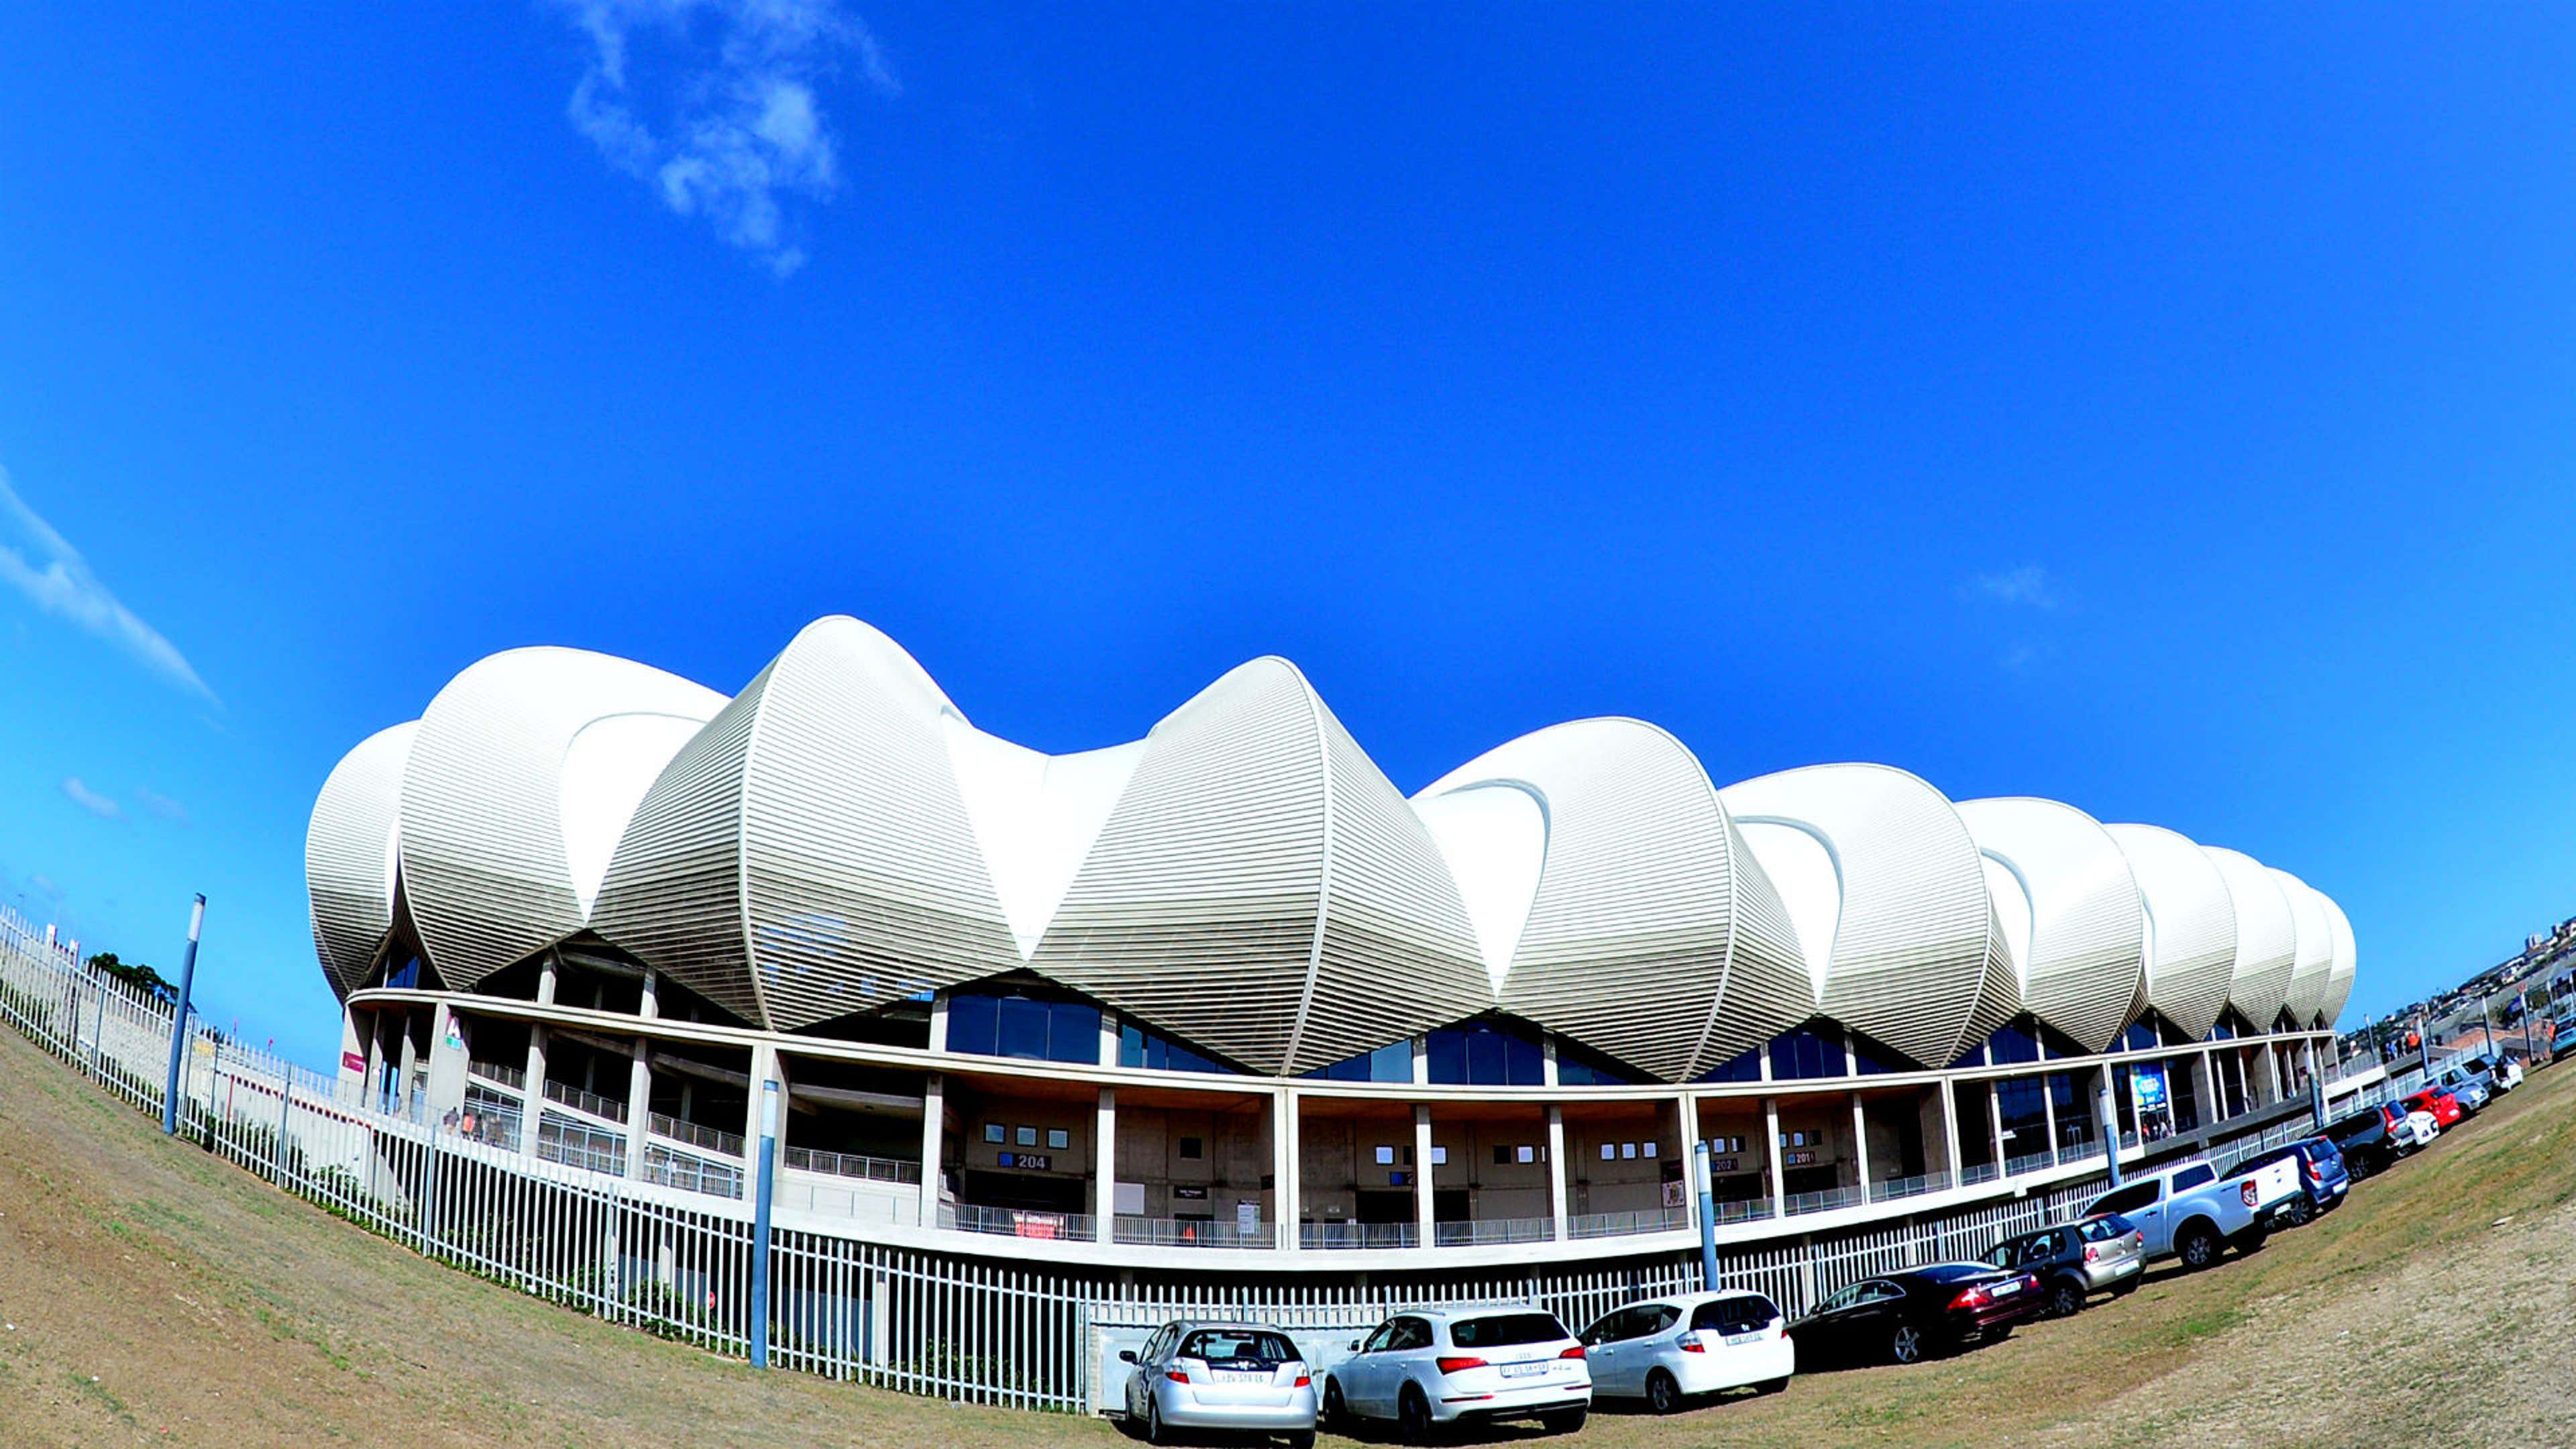 Nelson Mandela Bay Stadium